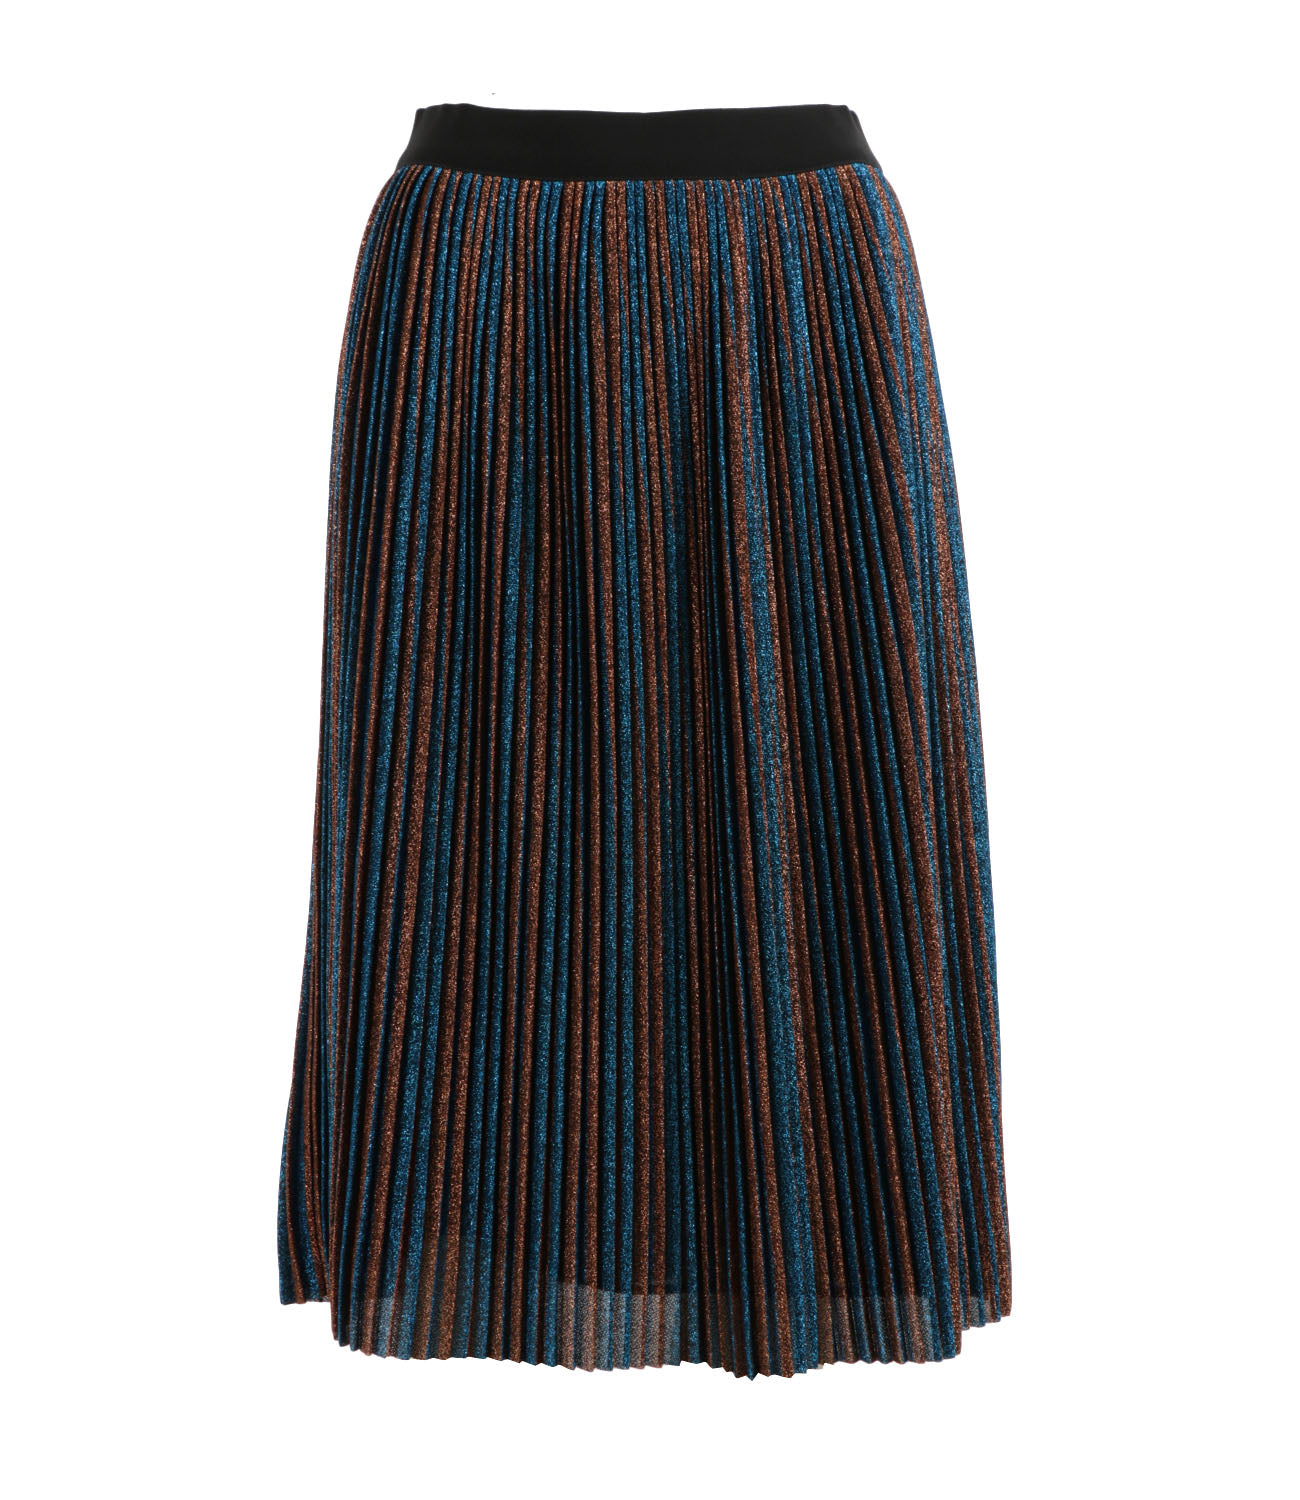 Amber skirt